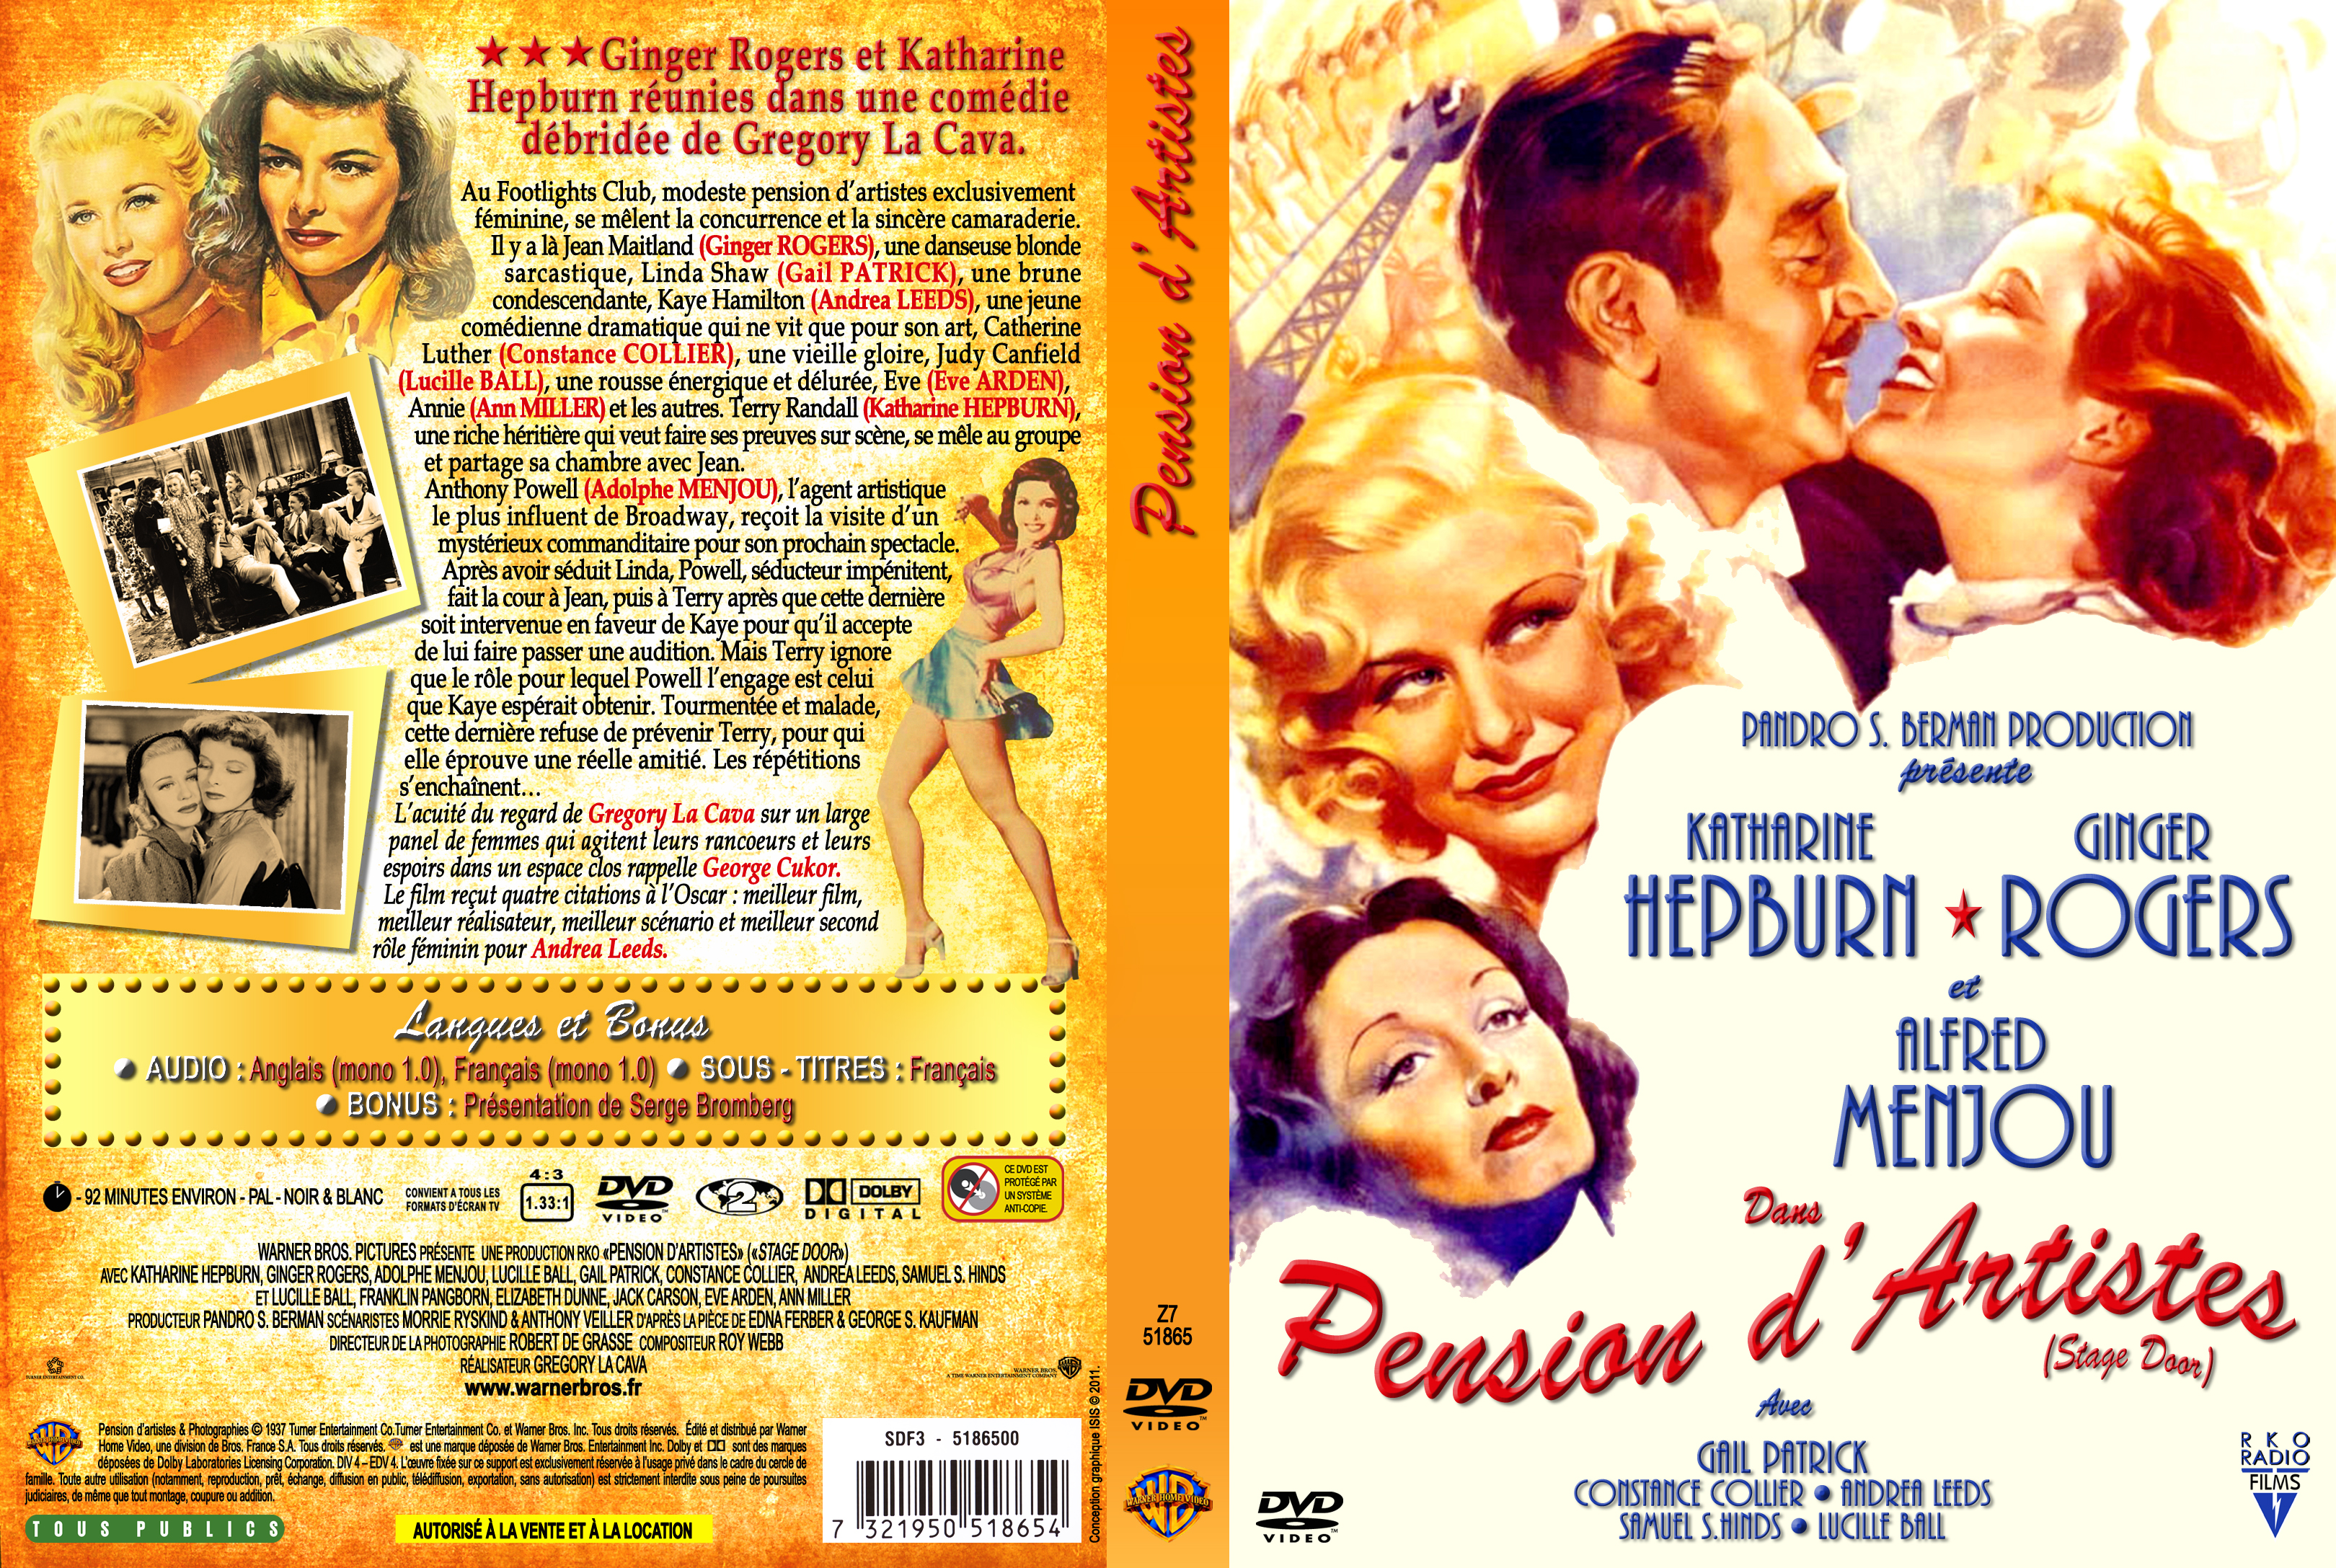 Jaquette DVD Pension d